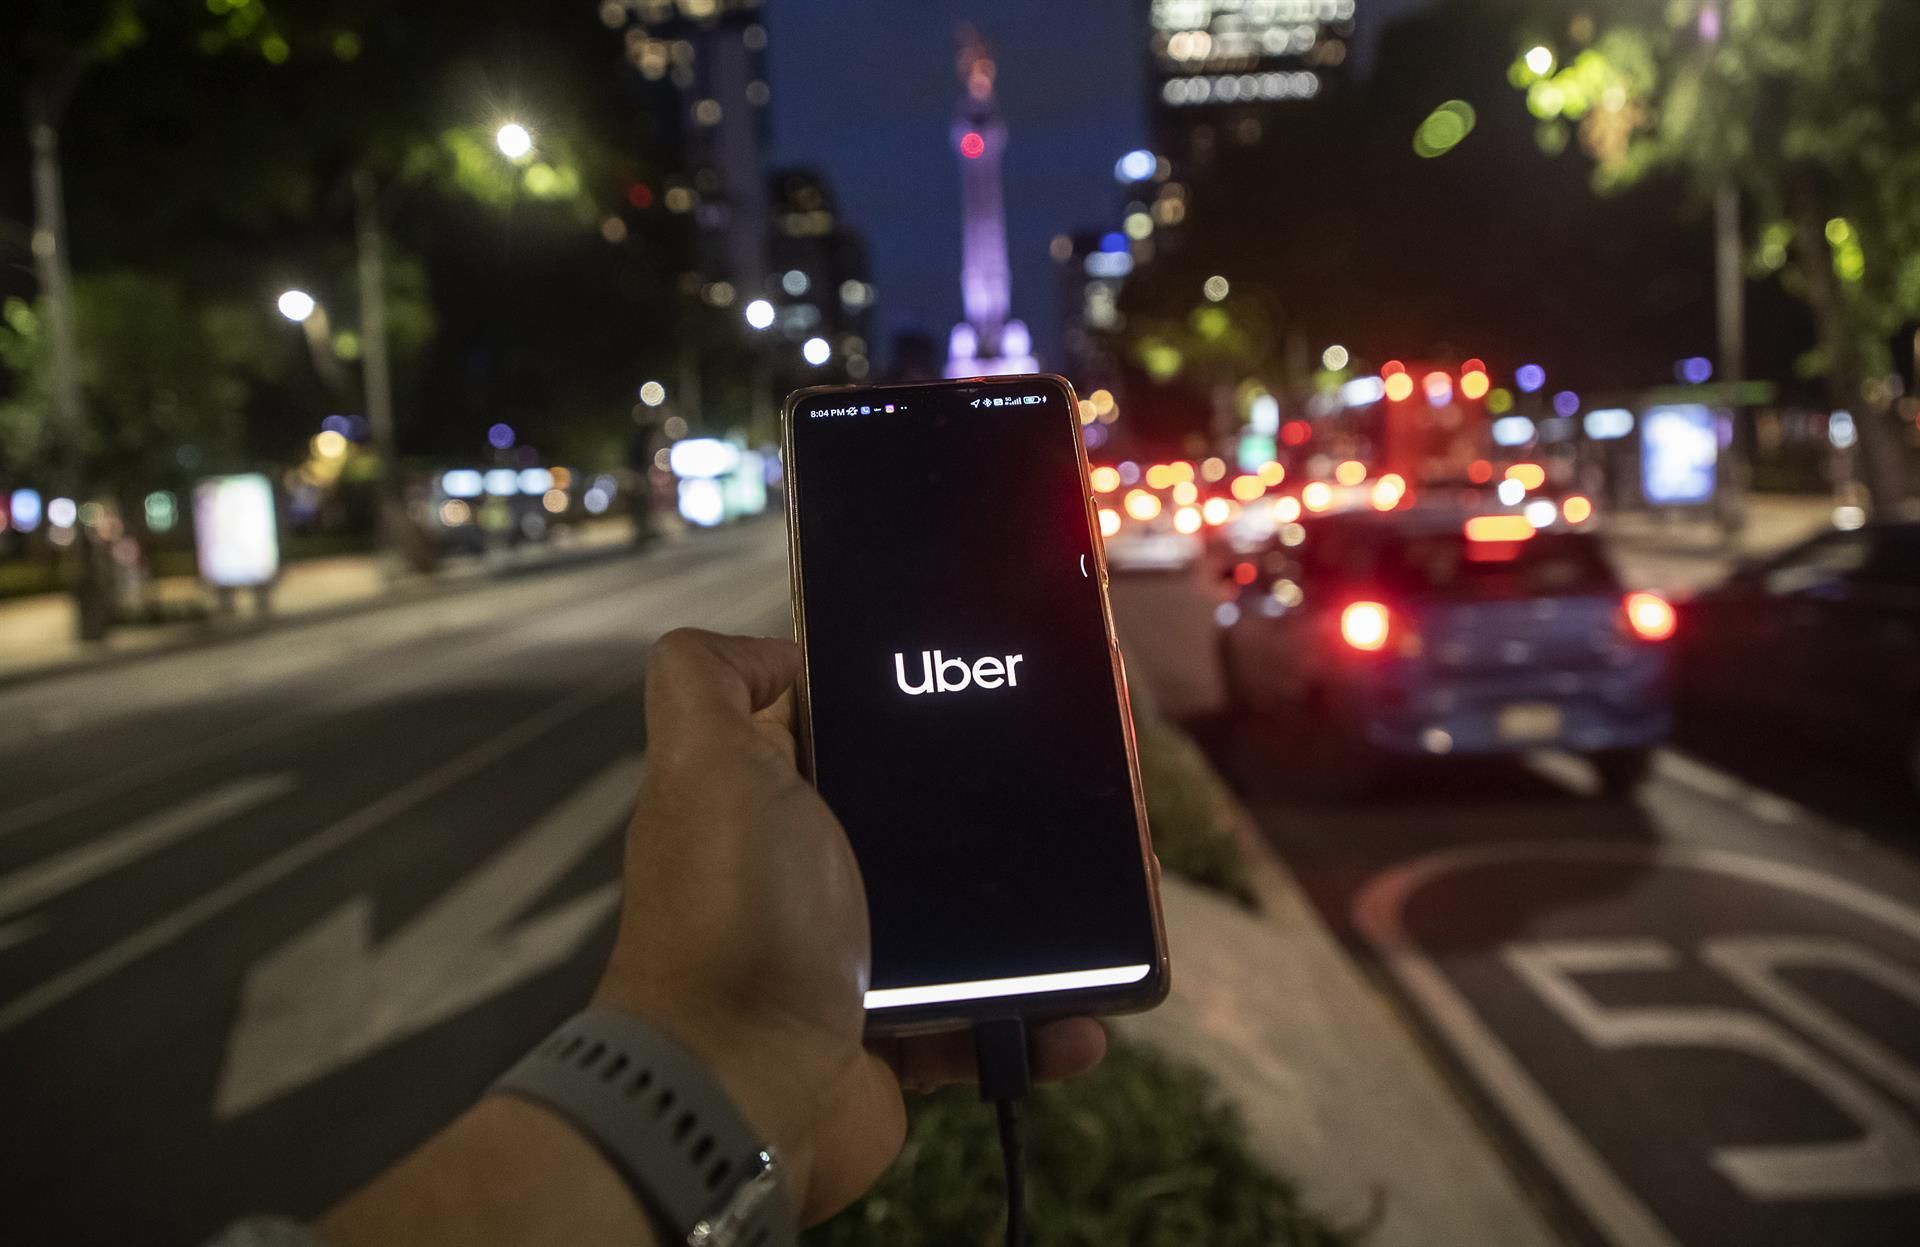 Una persona solicita un servicio de transporte en la aplicación Uber, ayer en la Ciudad de México (México). EFE/Isaac Esquivel